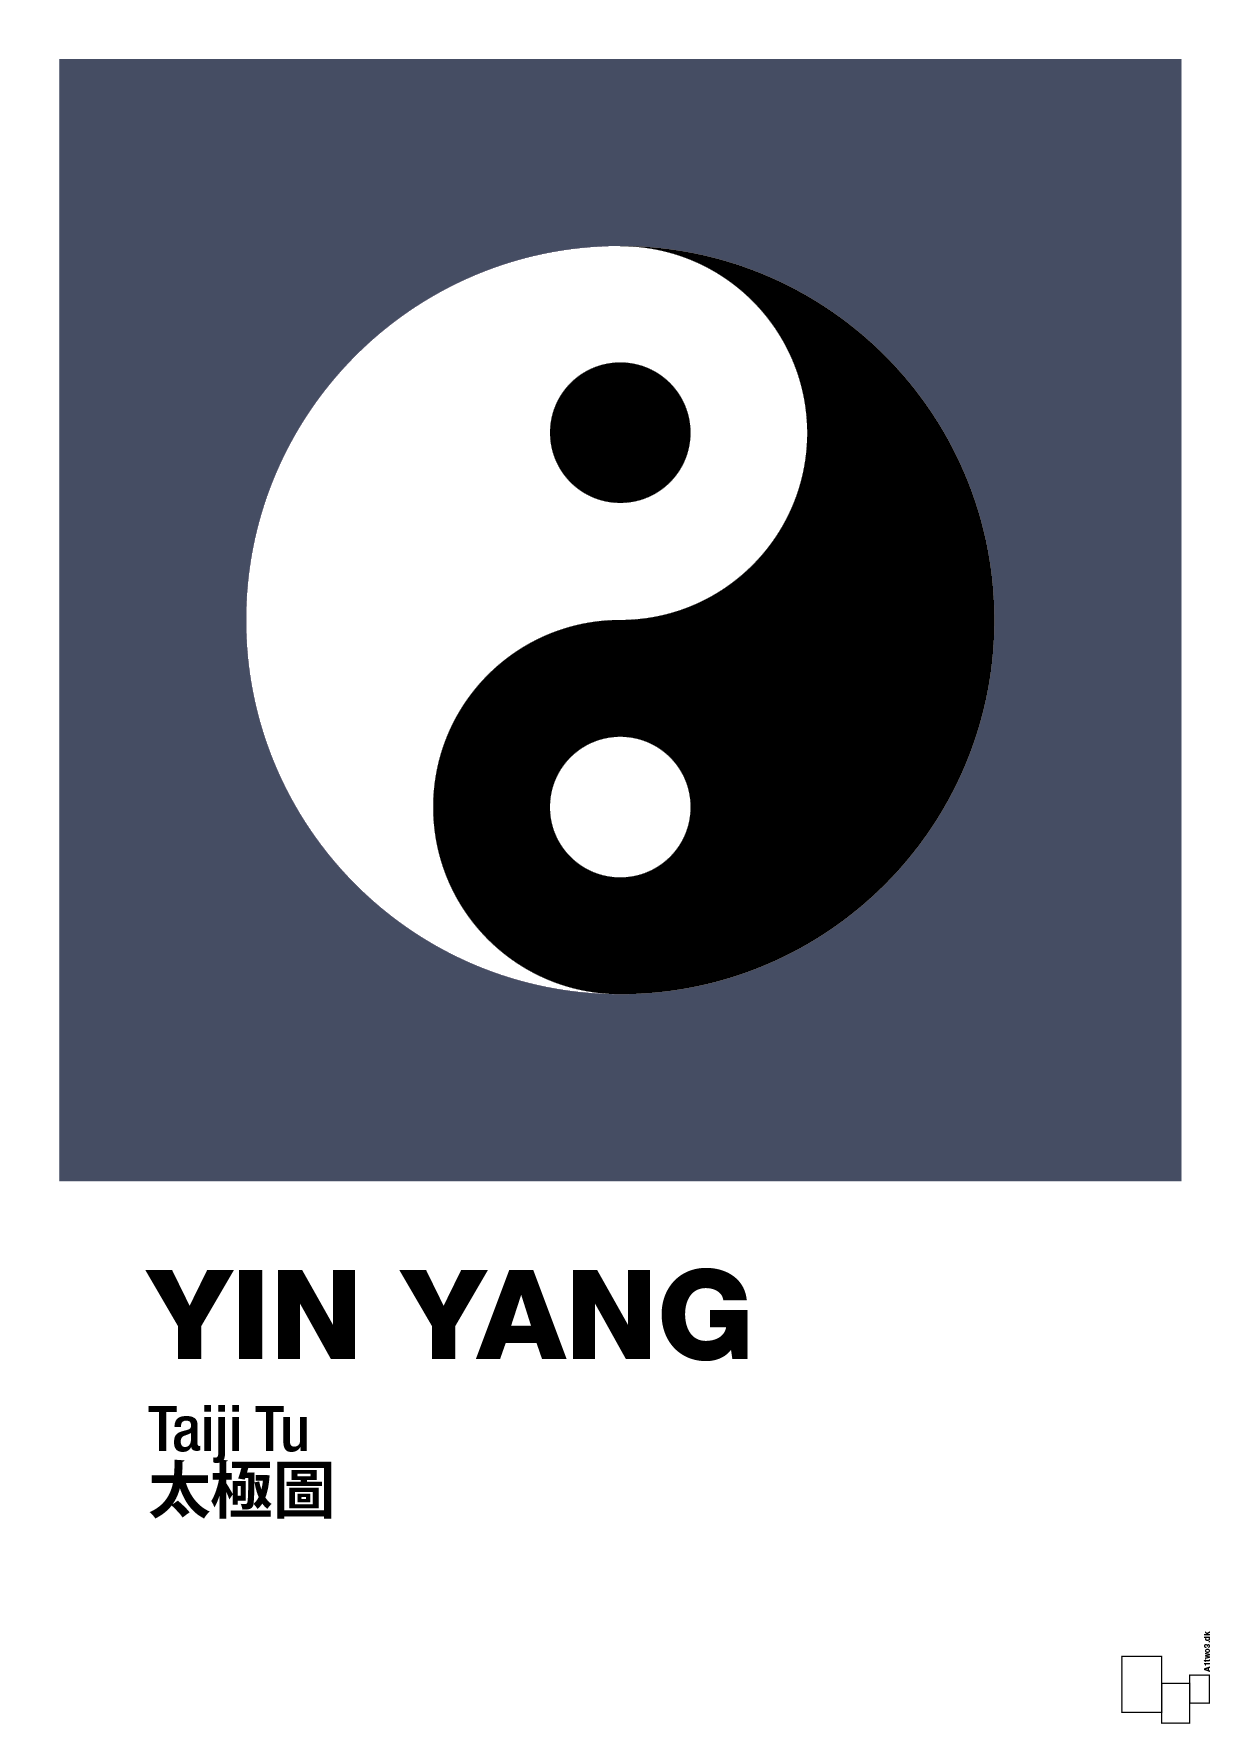 yin yang - Plakat med Videnskab i Petrol